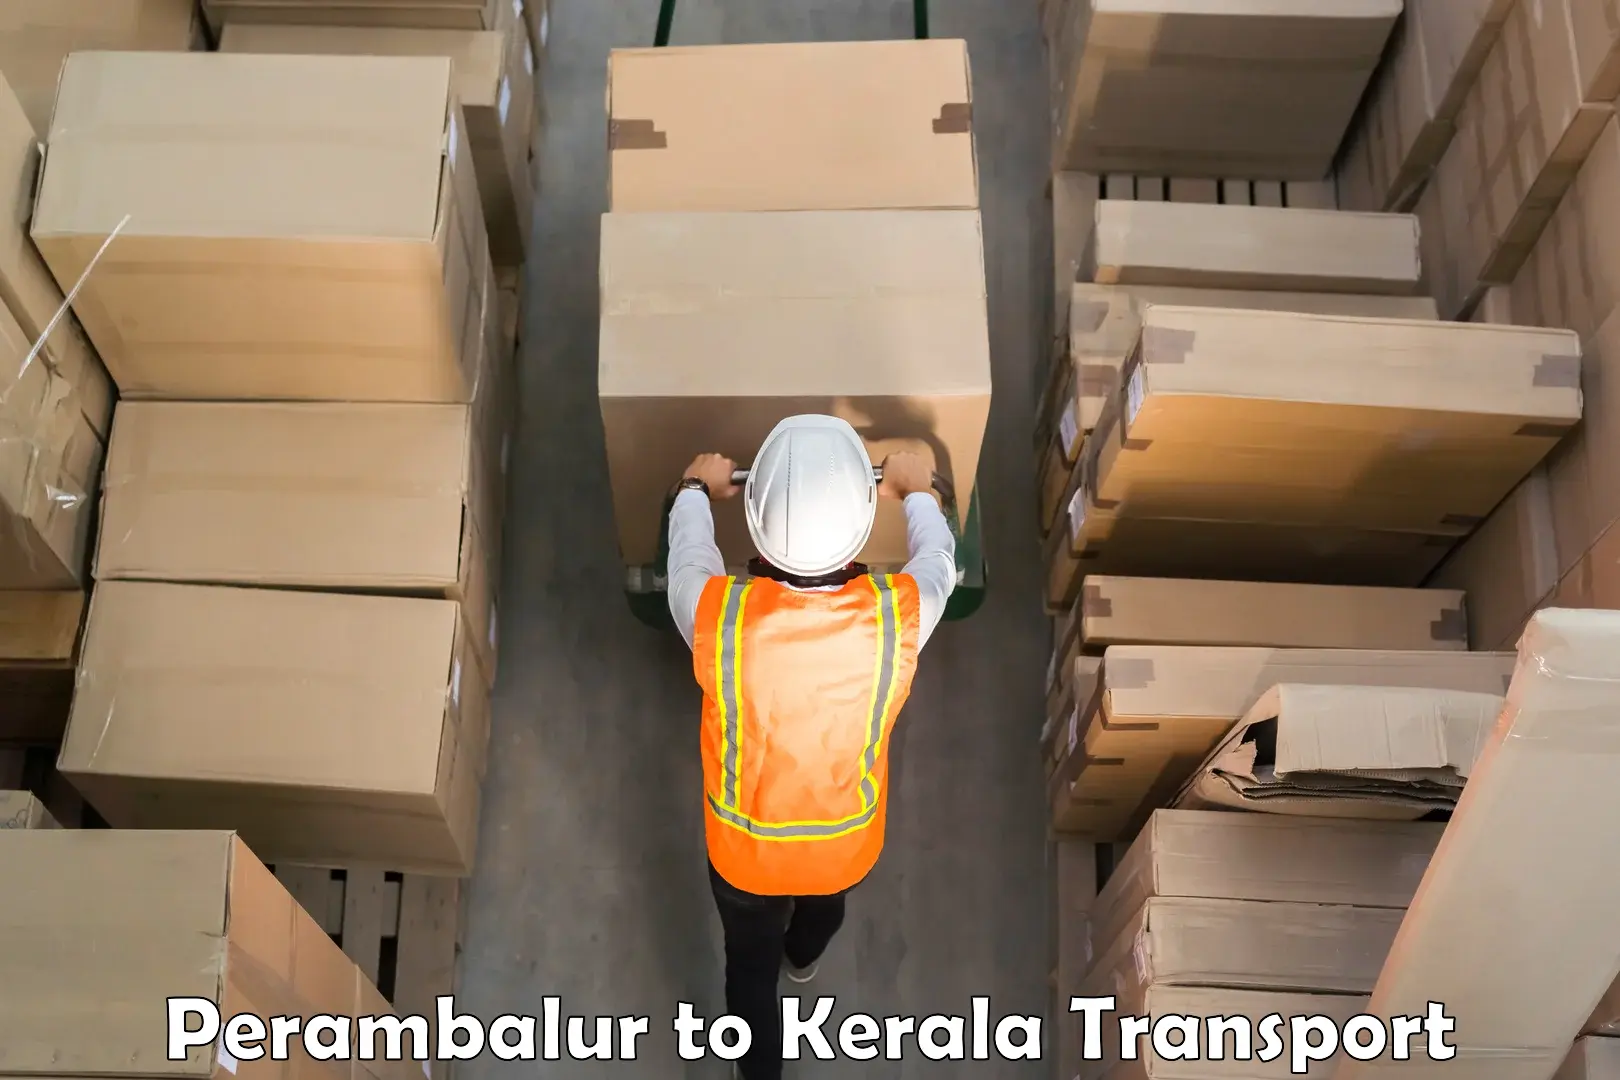 Online transport service Perambalur to Kakkayam